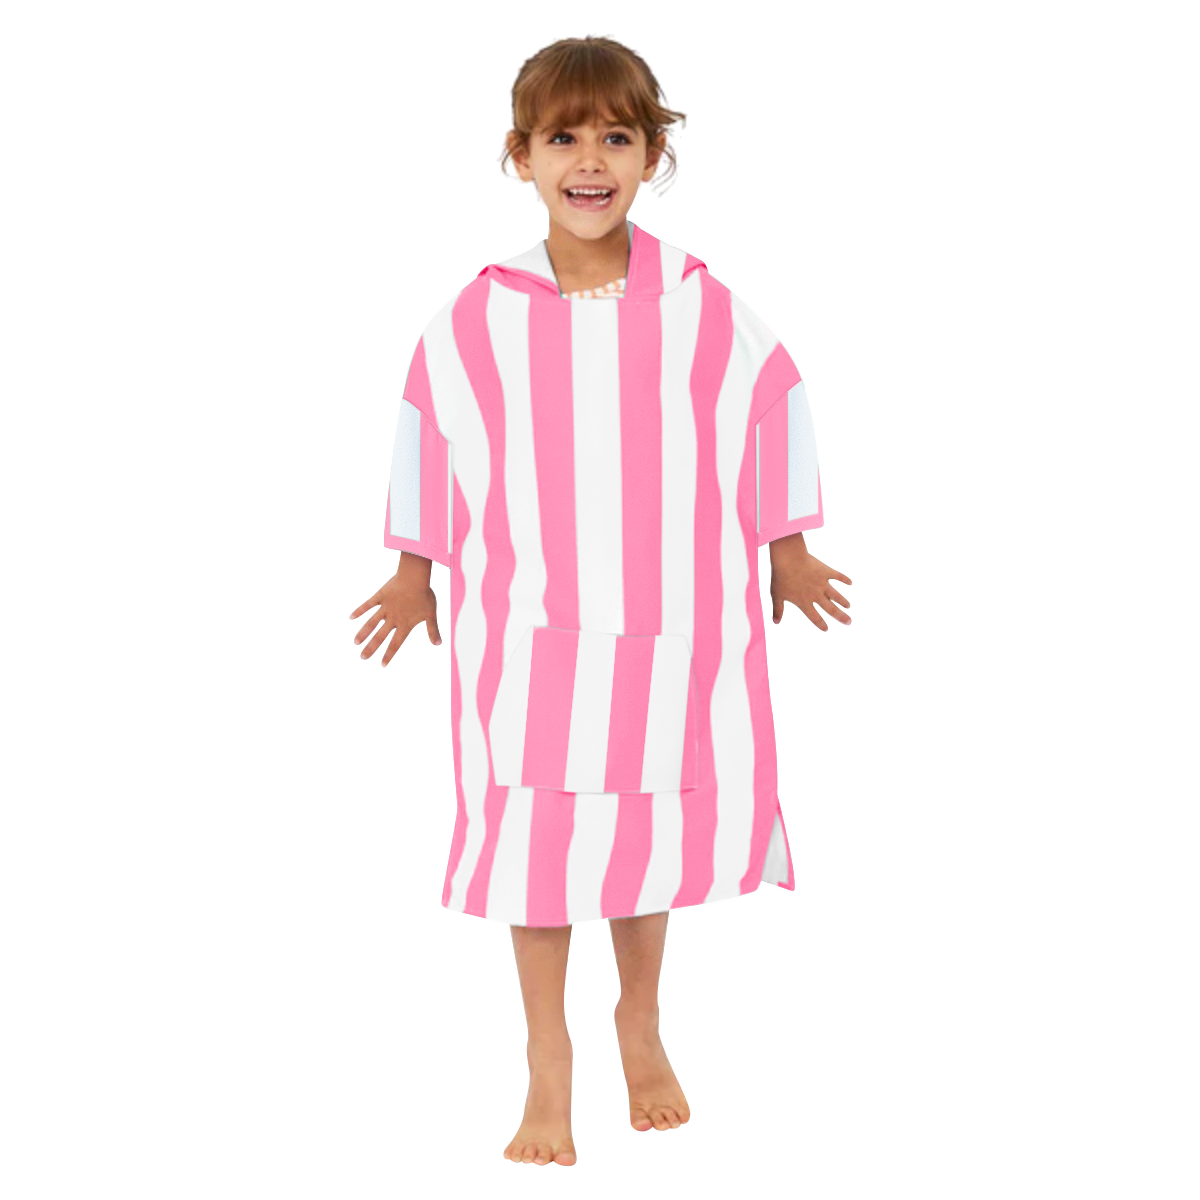 Kids Pink Striped Poncho